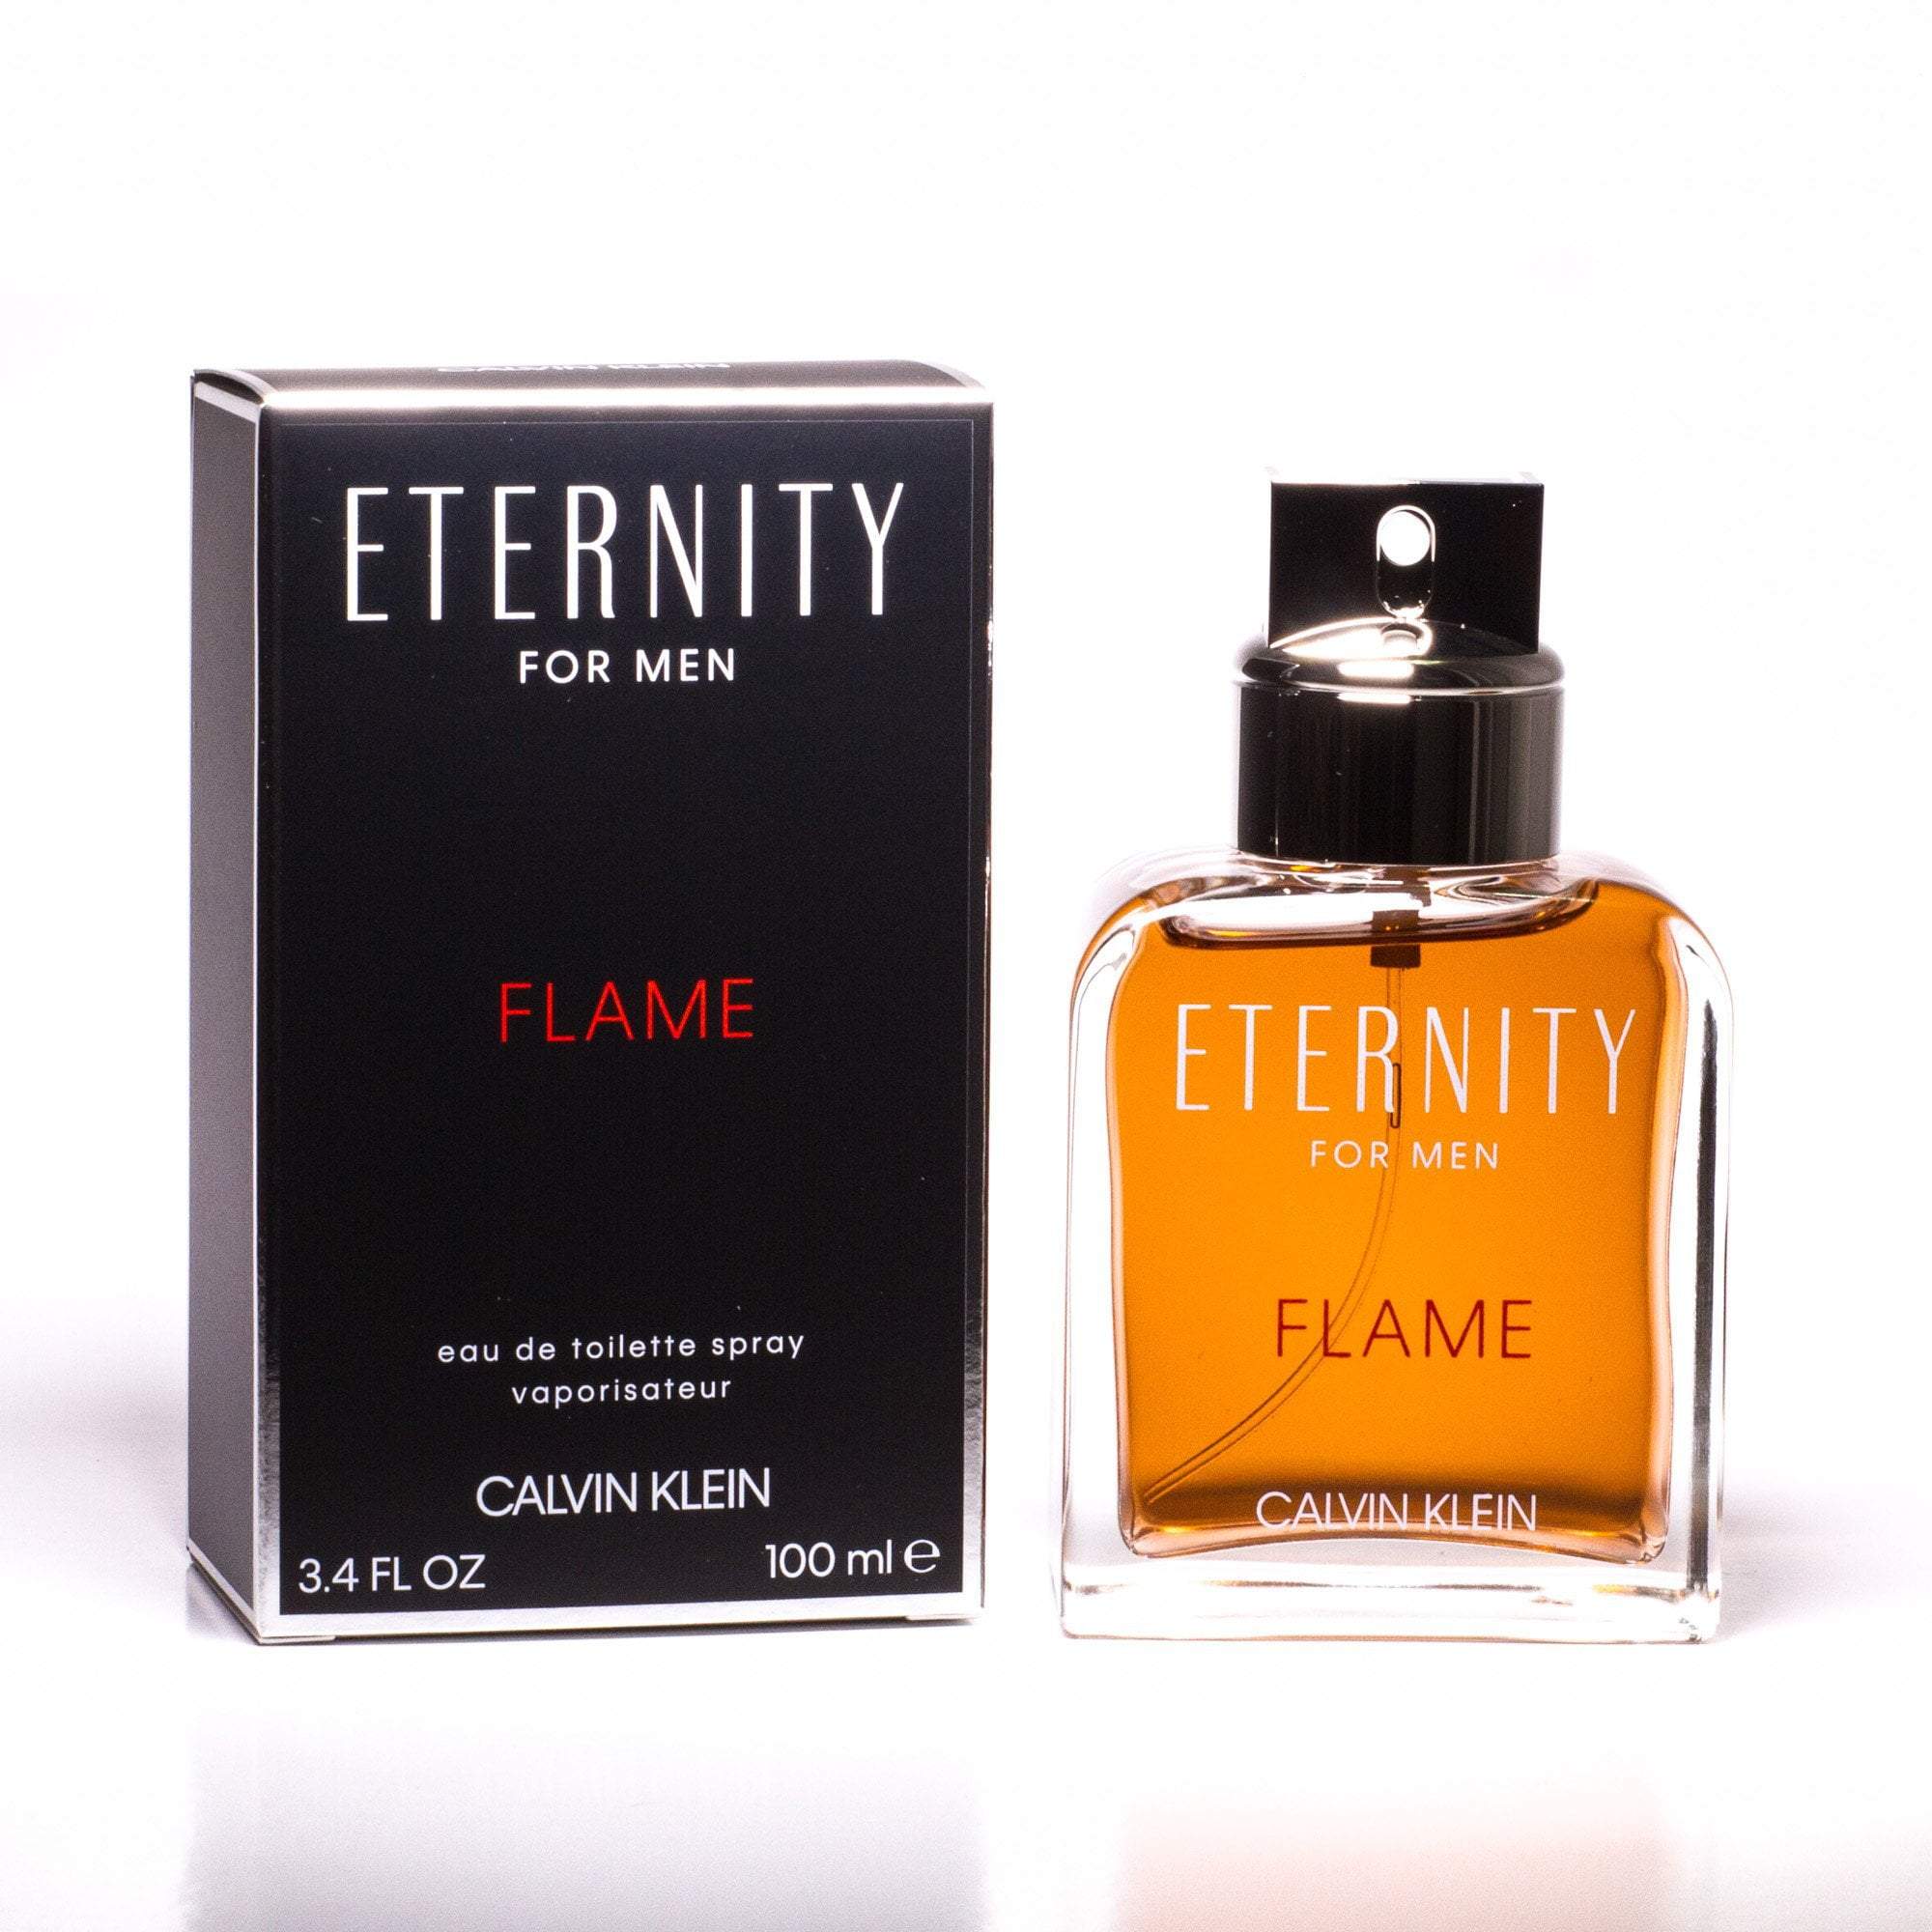 Flame Eau Toilette for Men Perfumania Klein by Spray de – Calvin